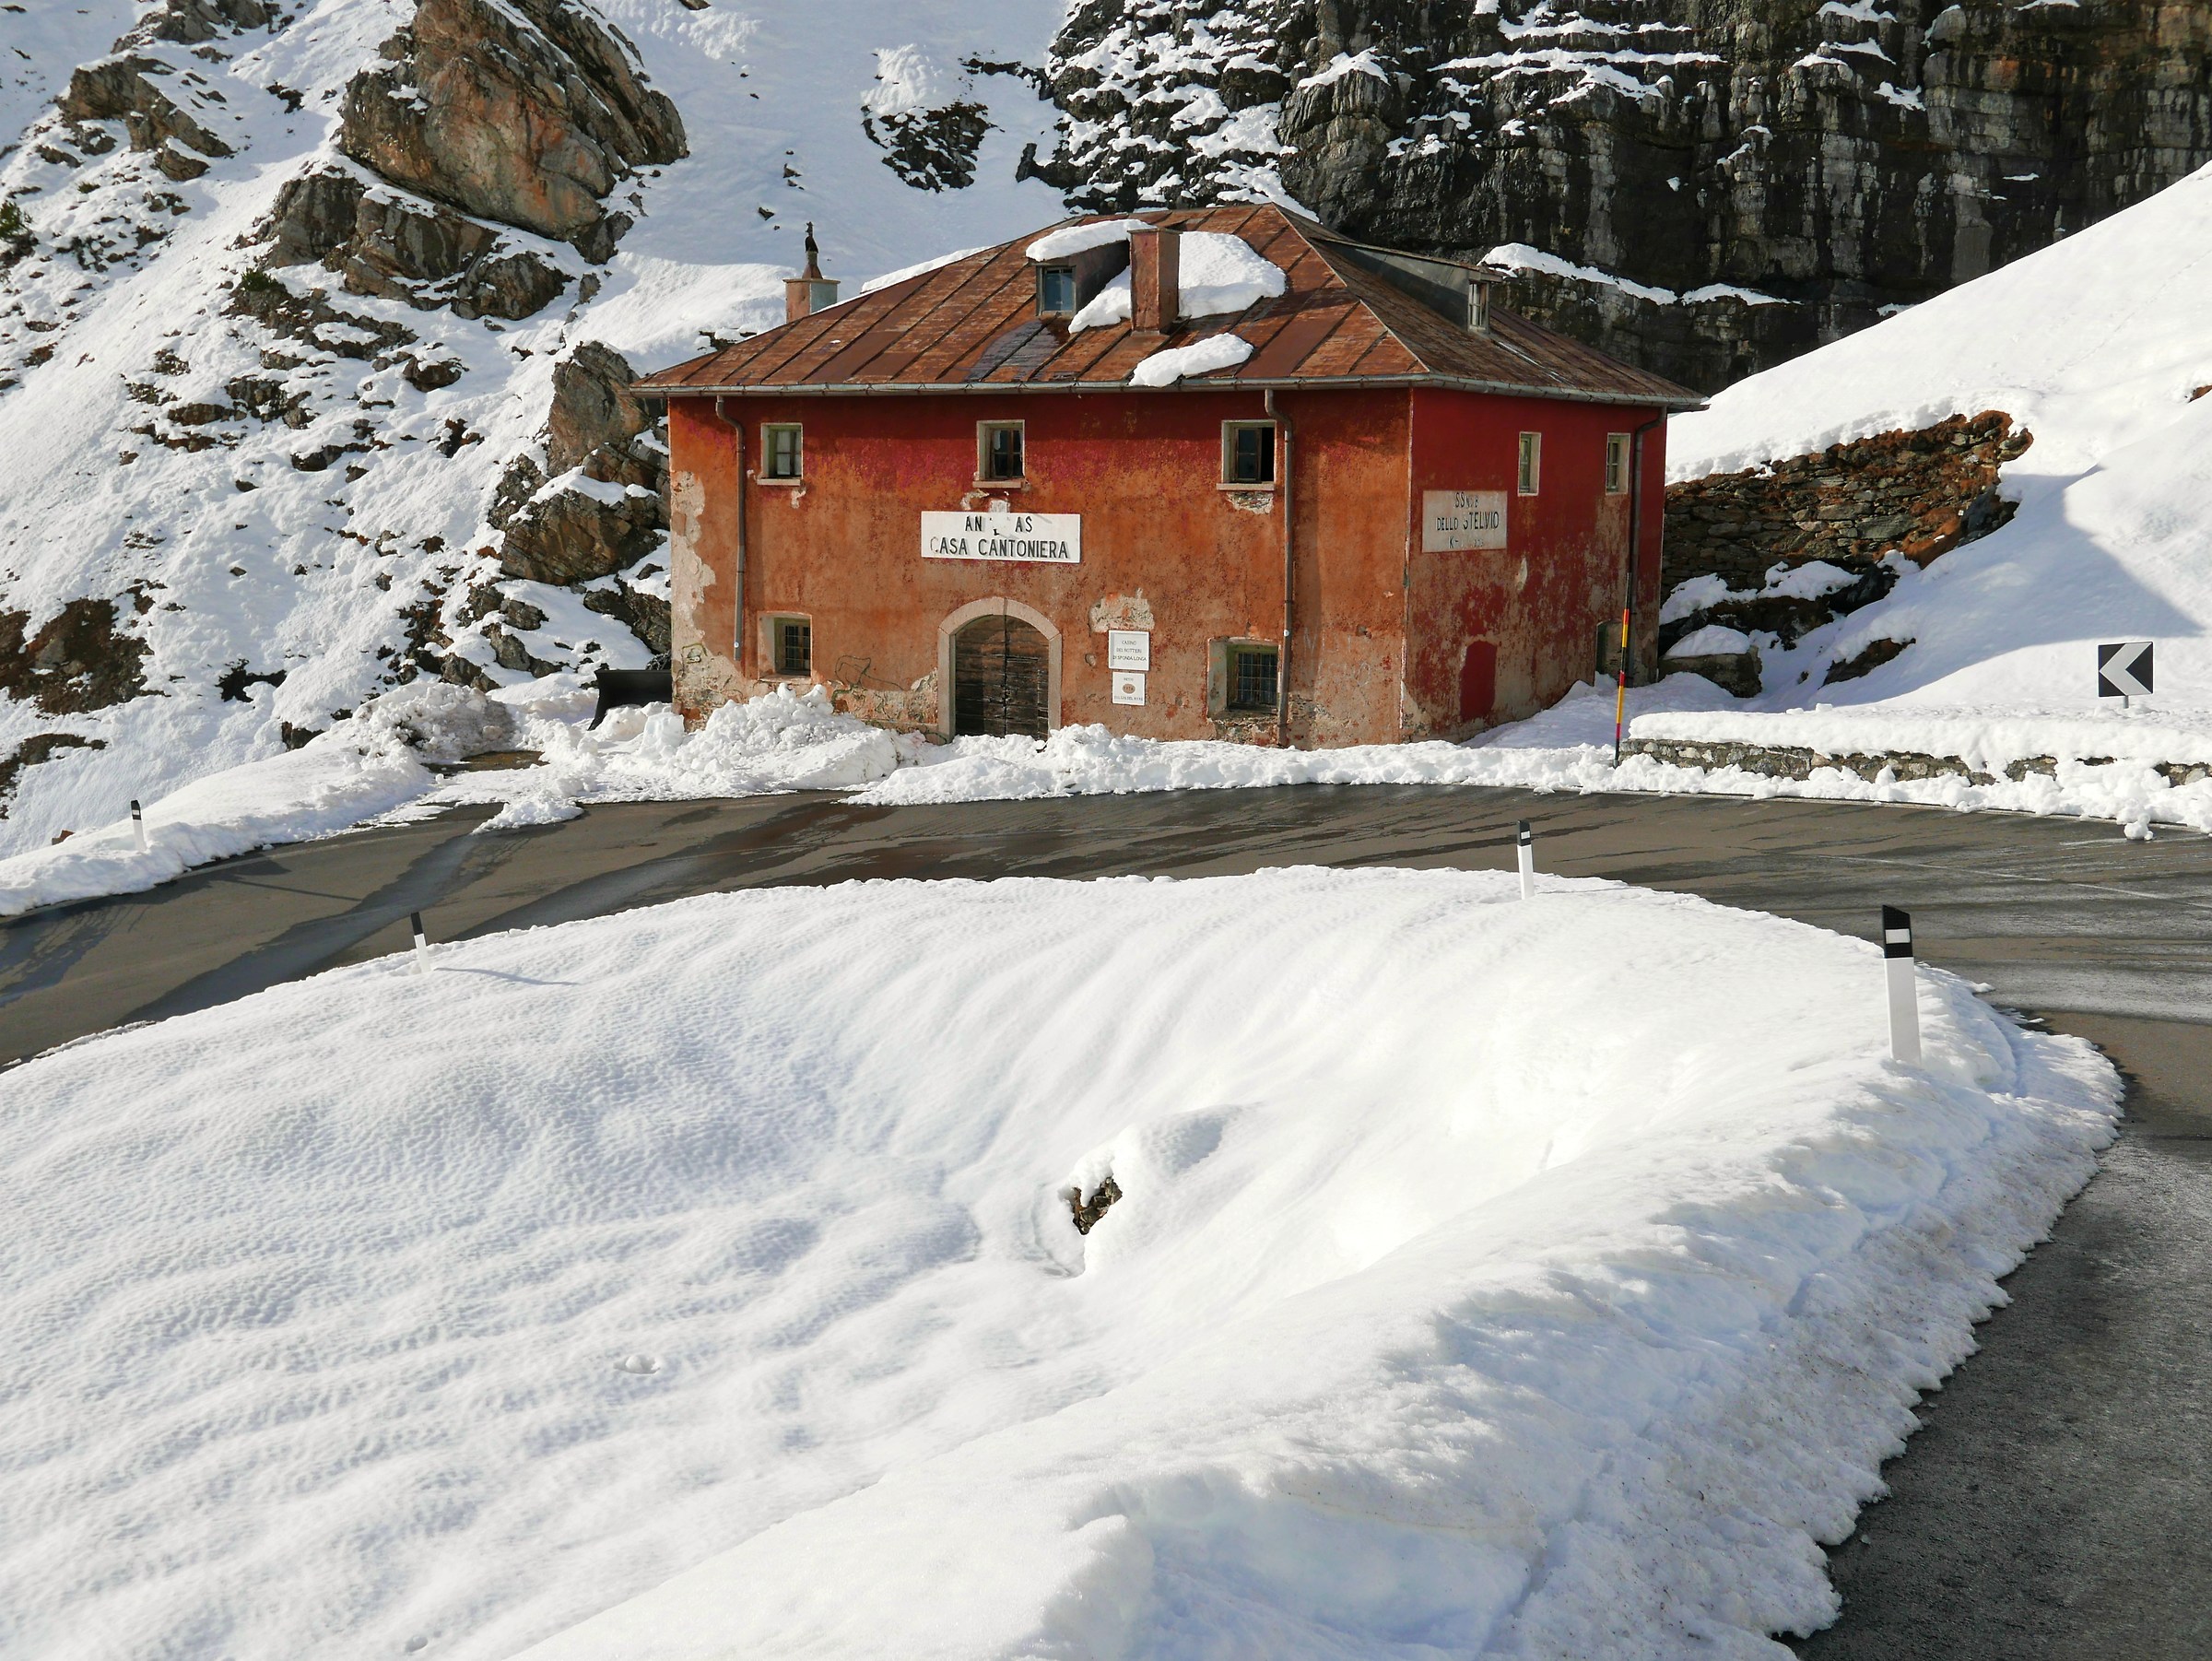 Stelvio Pass Snow Cantoniera...